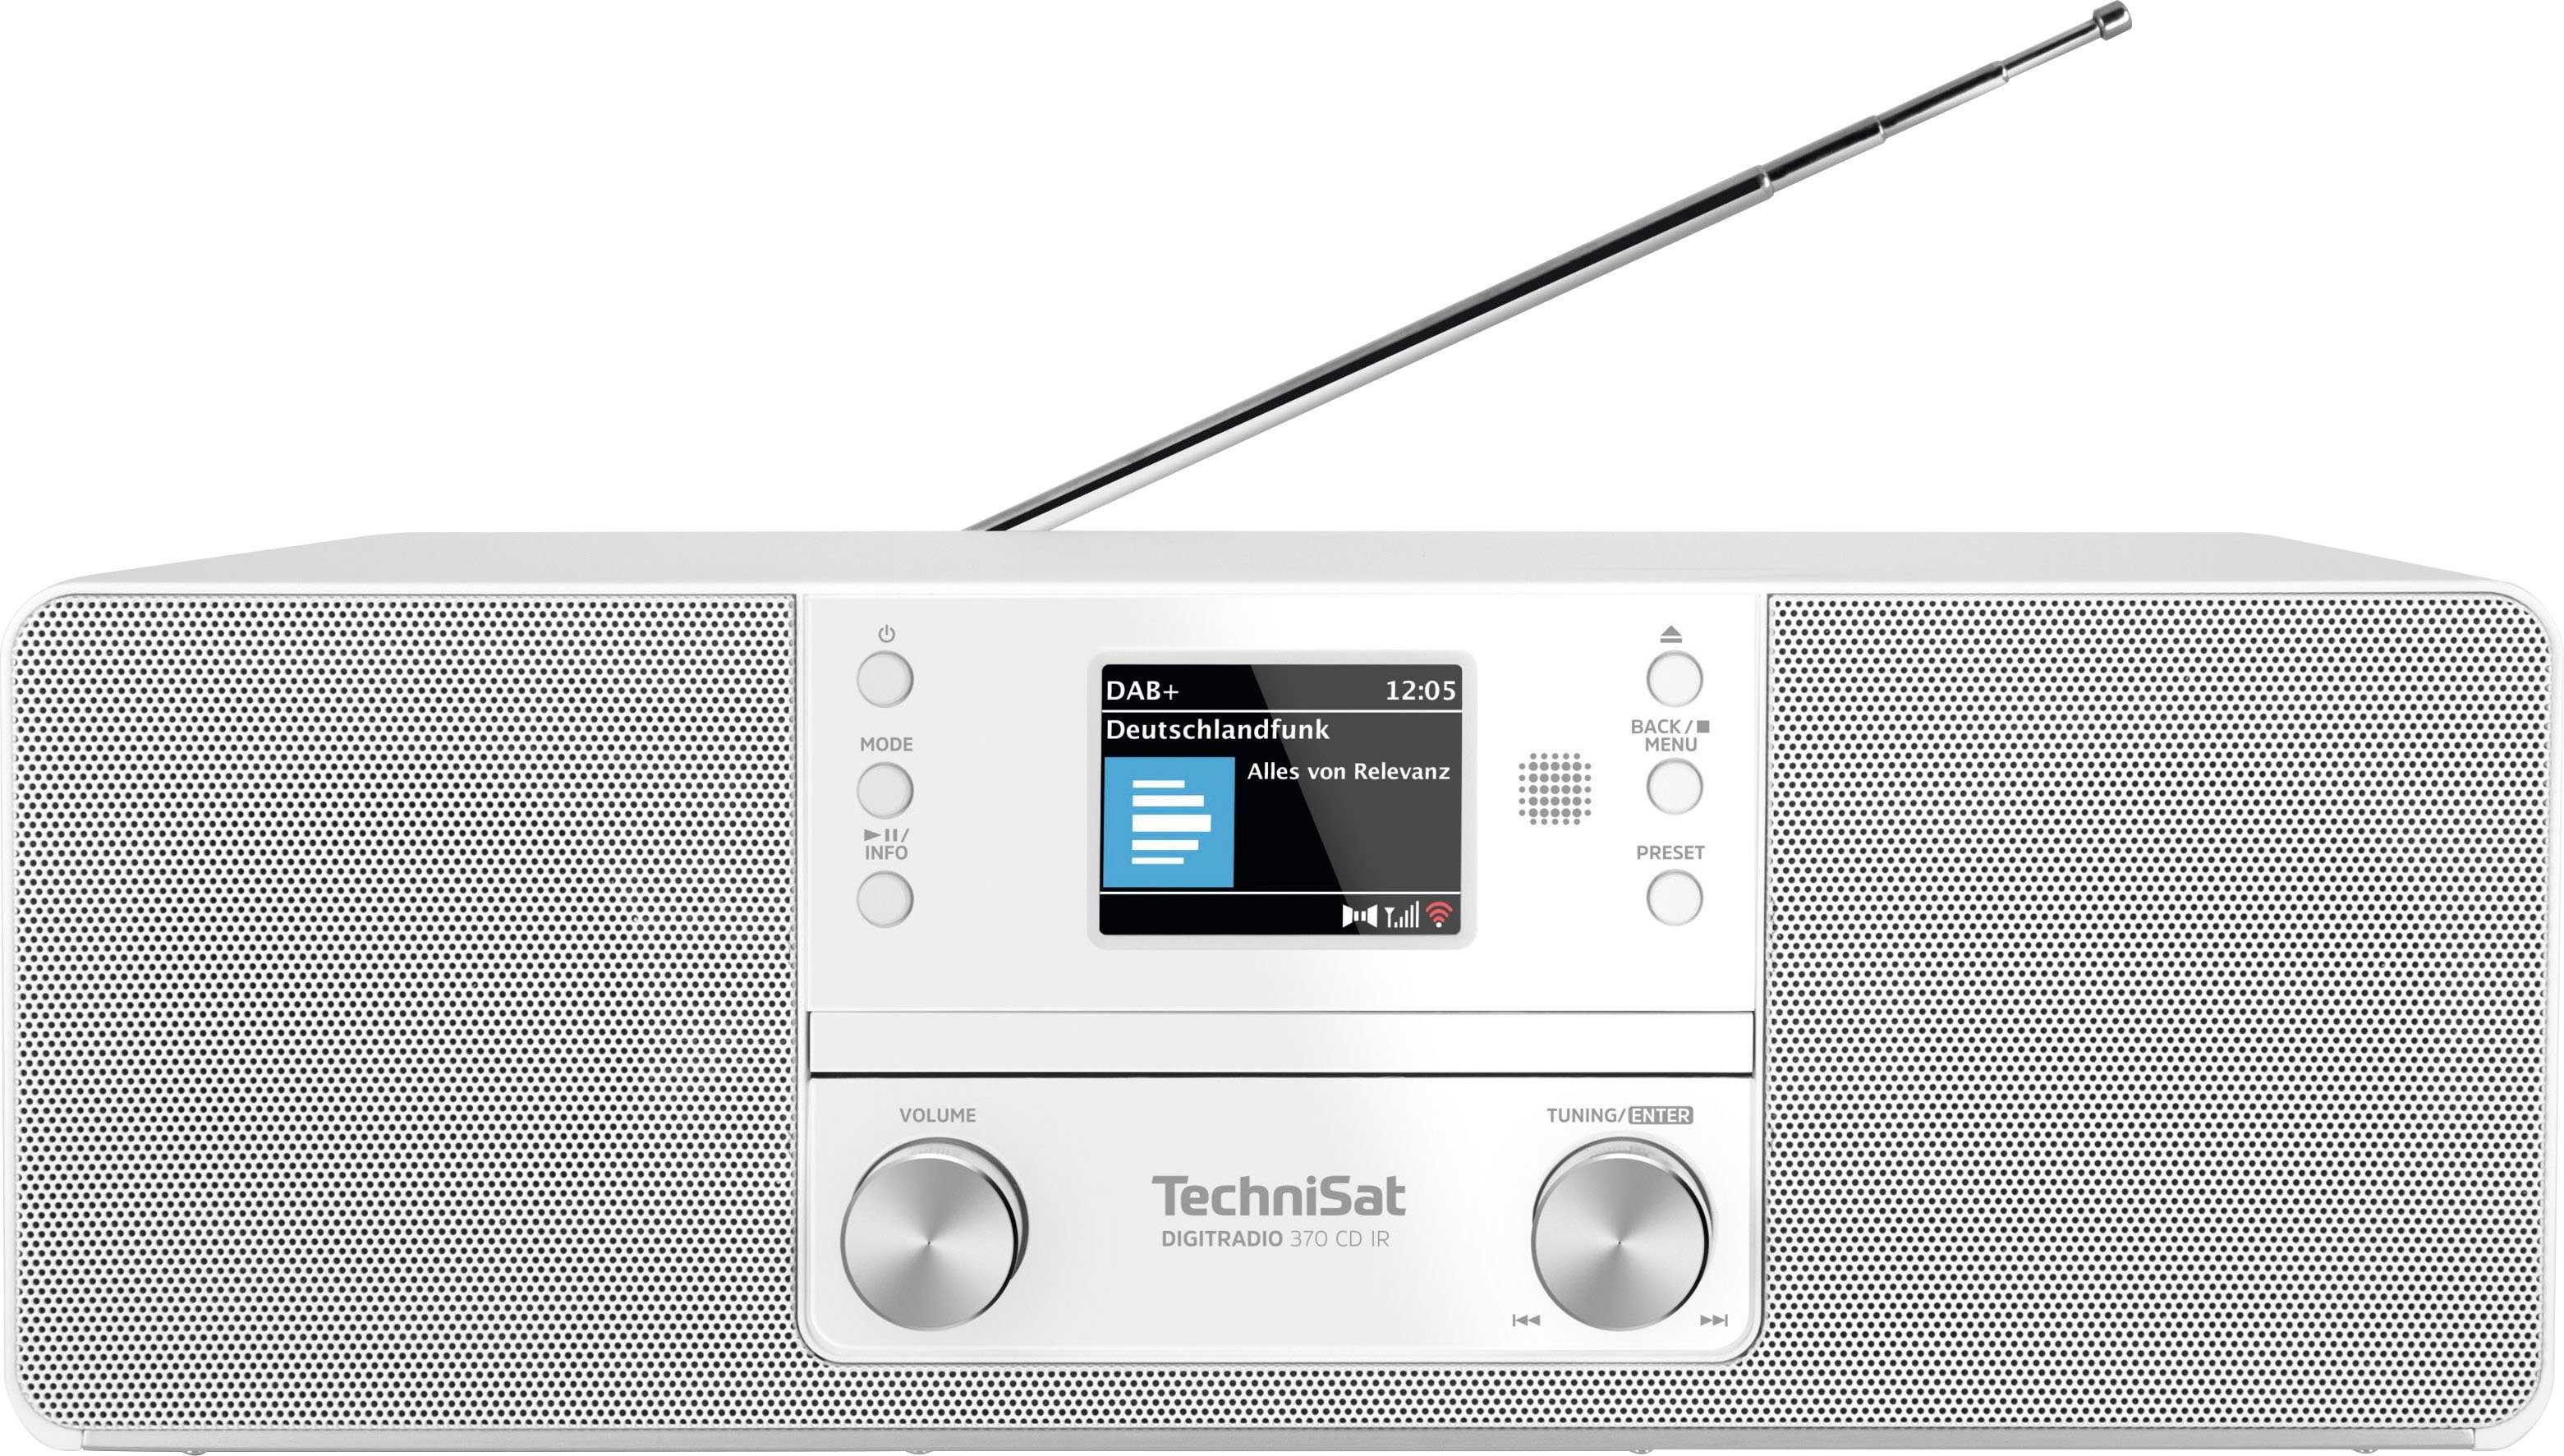 TechniSat DIGITRADIO 370 (Digitalradio 10 Digitalradio (DAB), UKW mit weiß (DAB) RDS, W) CD IR